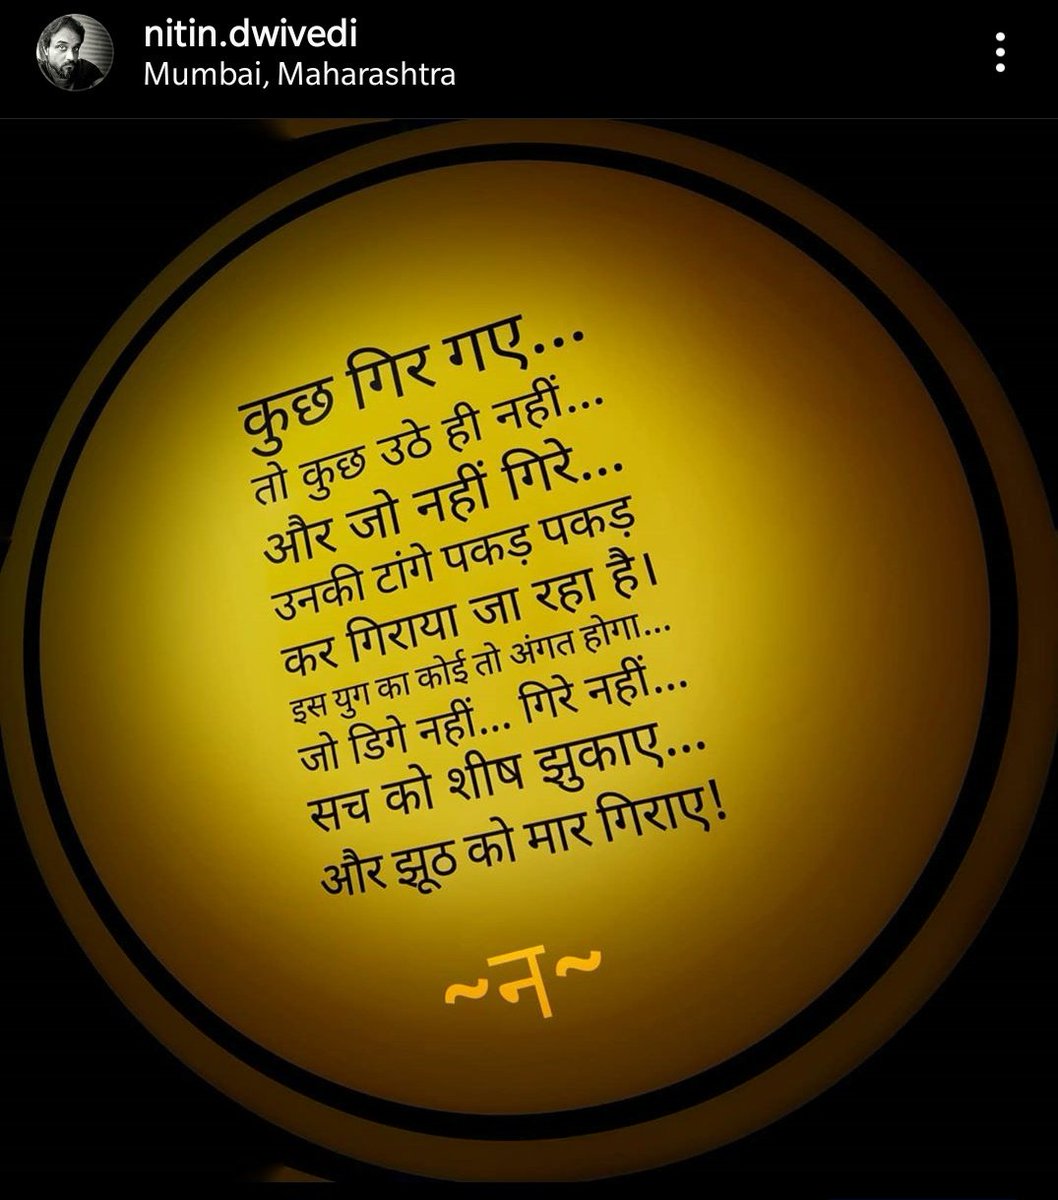 कुछ लाइने ऐसी लिखी हैं जो कभी भी... किसी भी माहौल में फिट हो जाती है. Will add all in this thread... #poetry  #PoetsTwitter  #POEMS  #kavita  #Hindi  #Hindipanktiyaan  #hindipoetry  #hind  #हिंदी